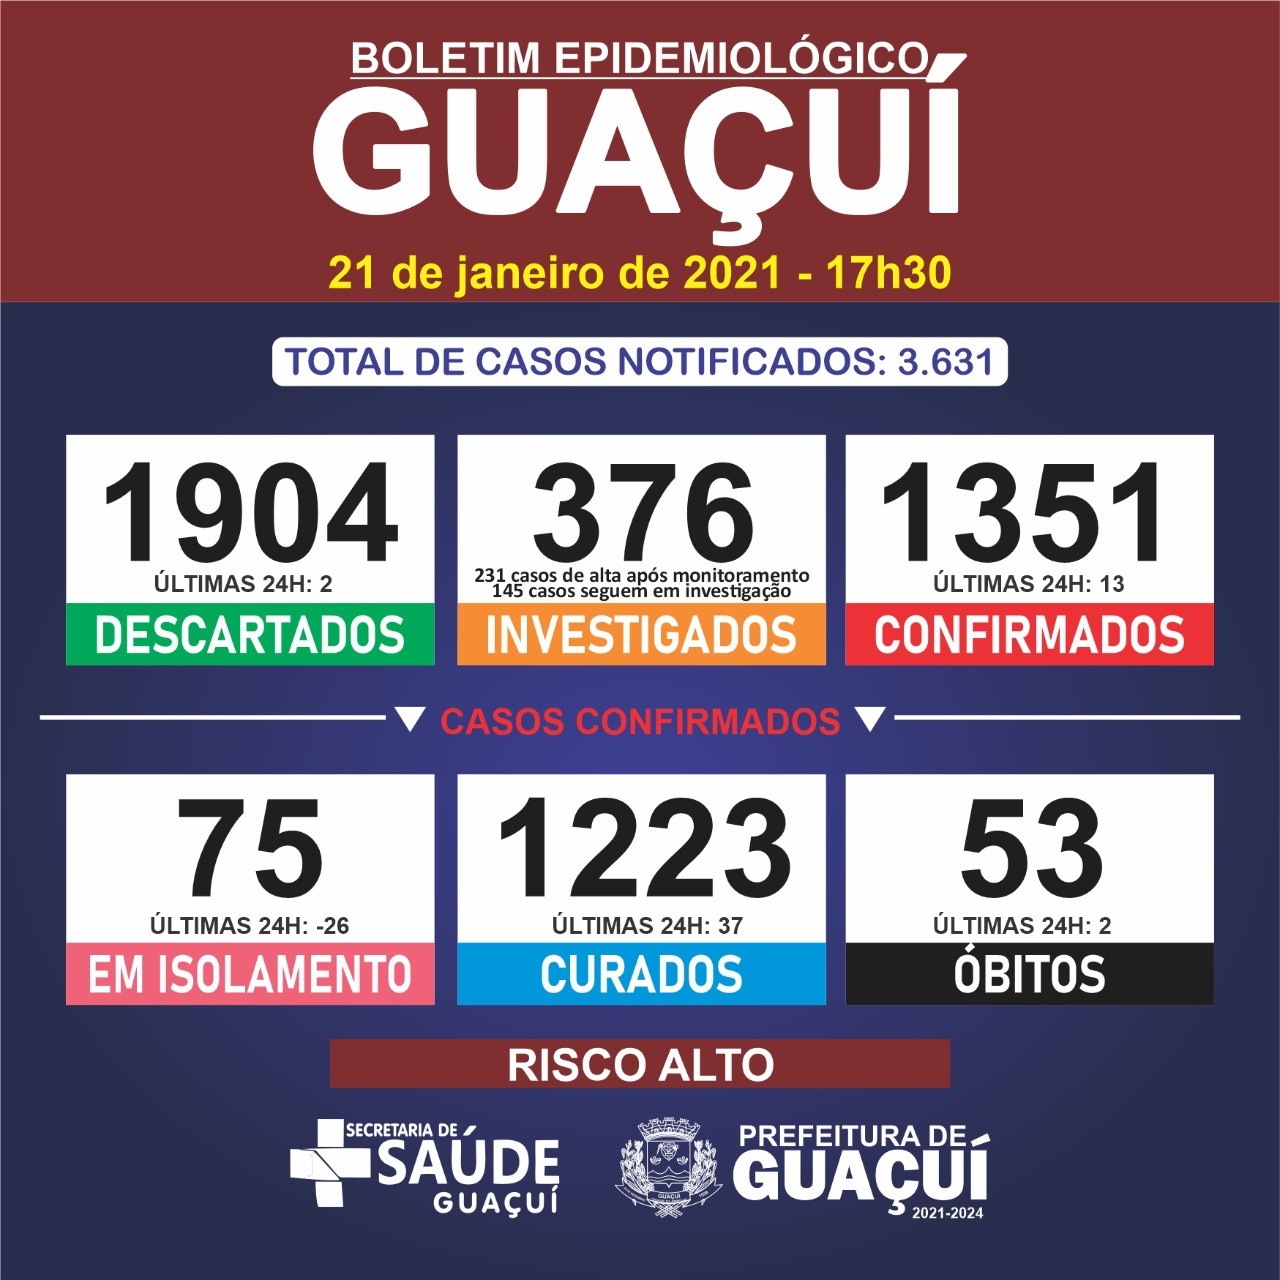 Boletim Epidemiológico 21/01/21: Guaçuí registra 2 óbitos, 13 casos de Covid-19 e 37 curados nesta quinta-feira